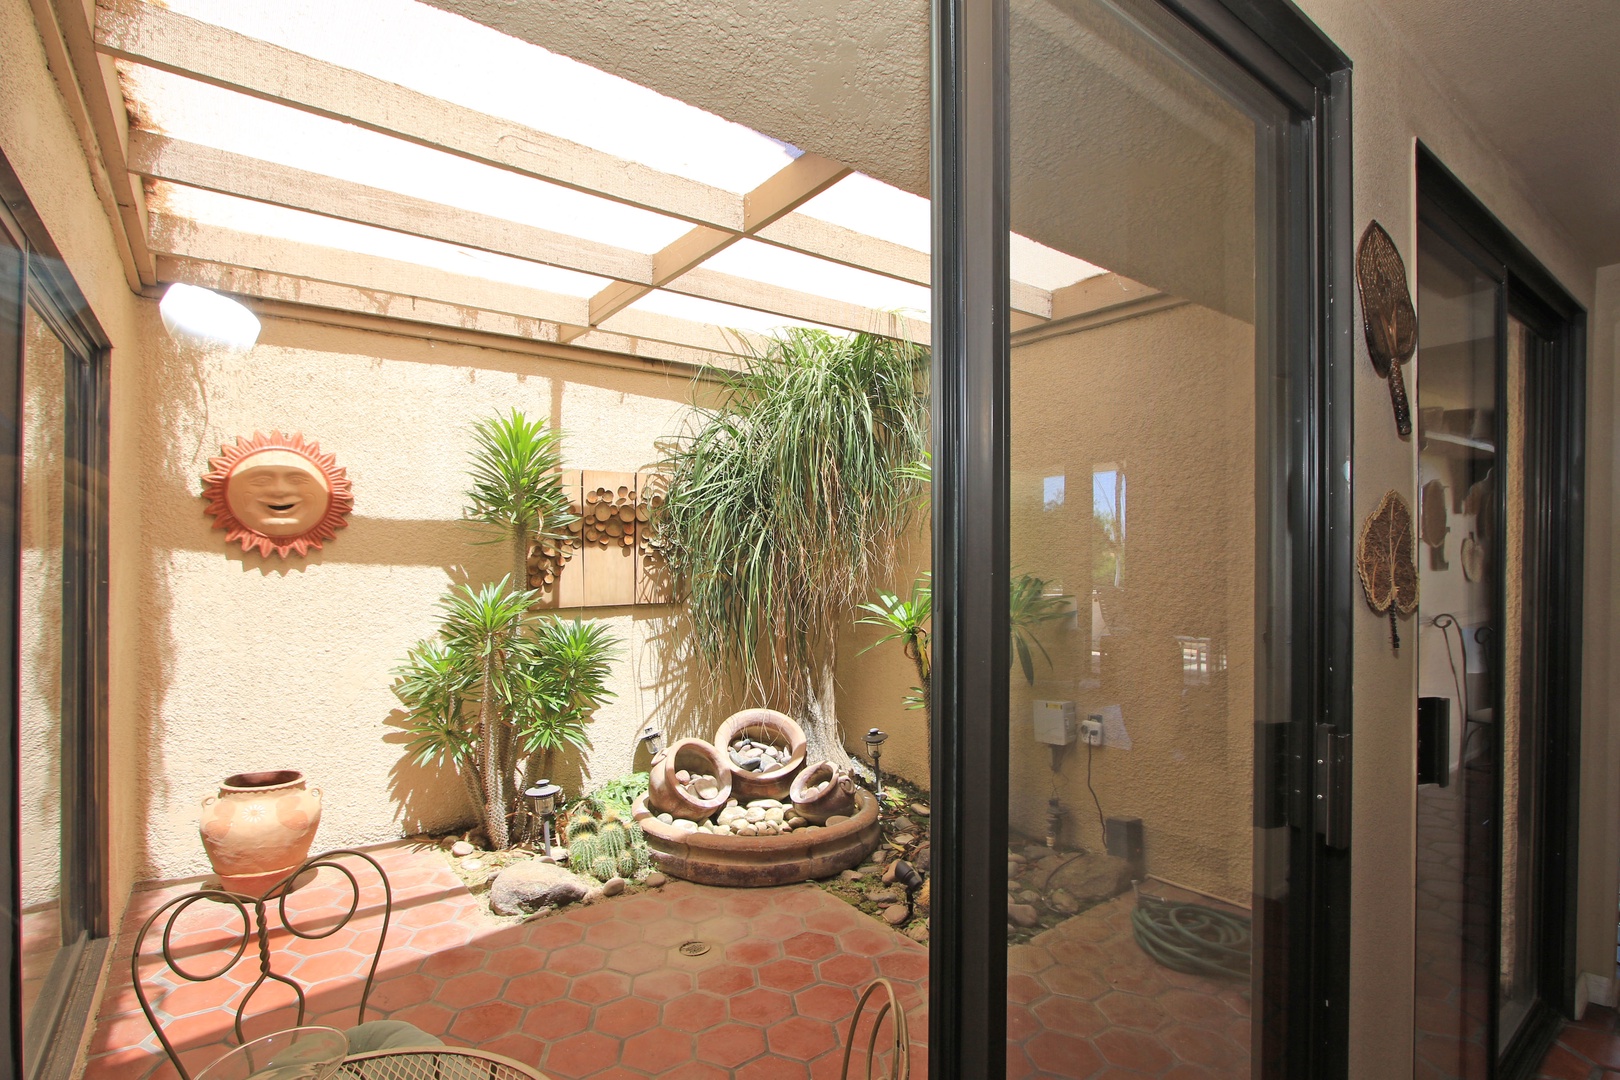 Sunny Atrium adds Natural Light to Living Area